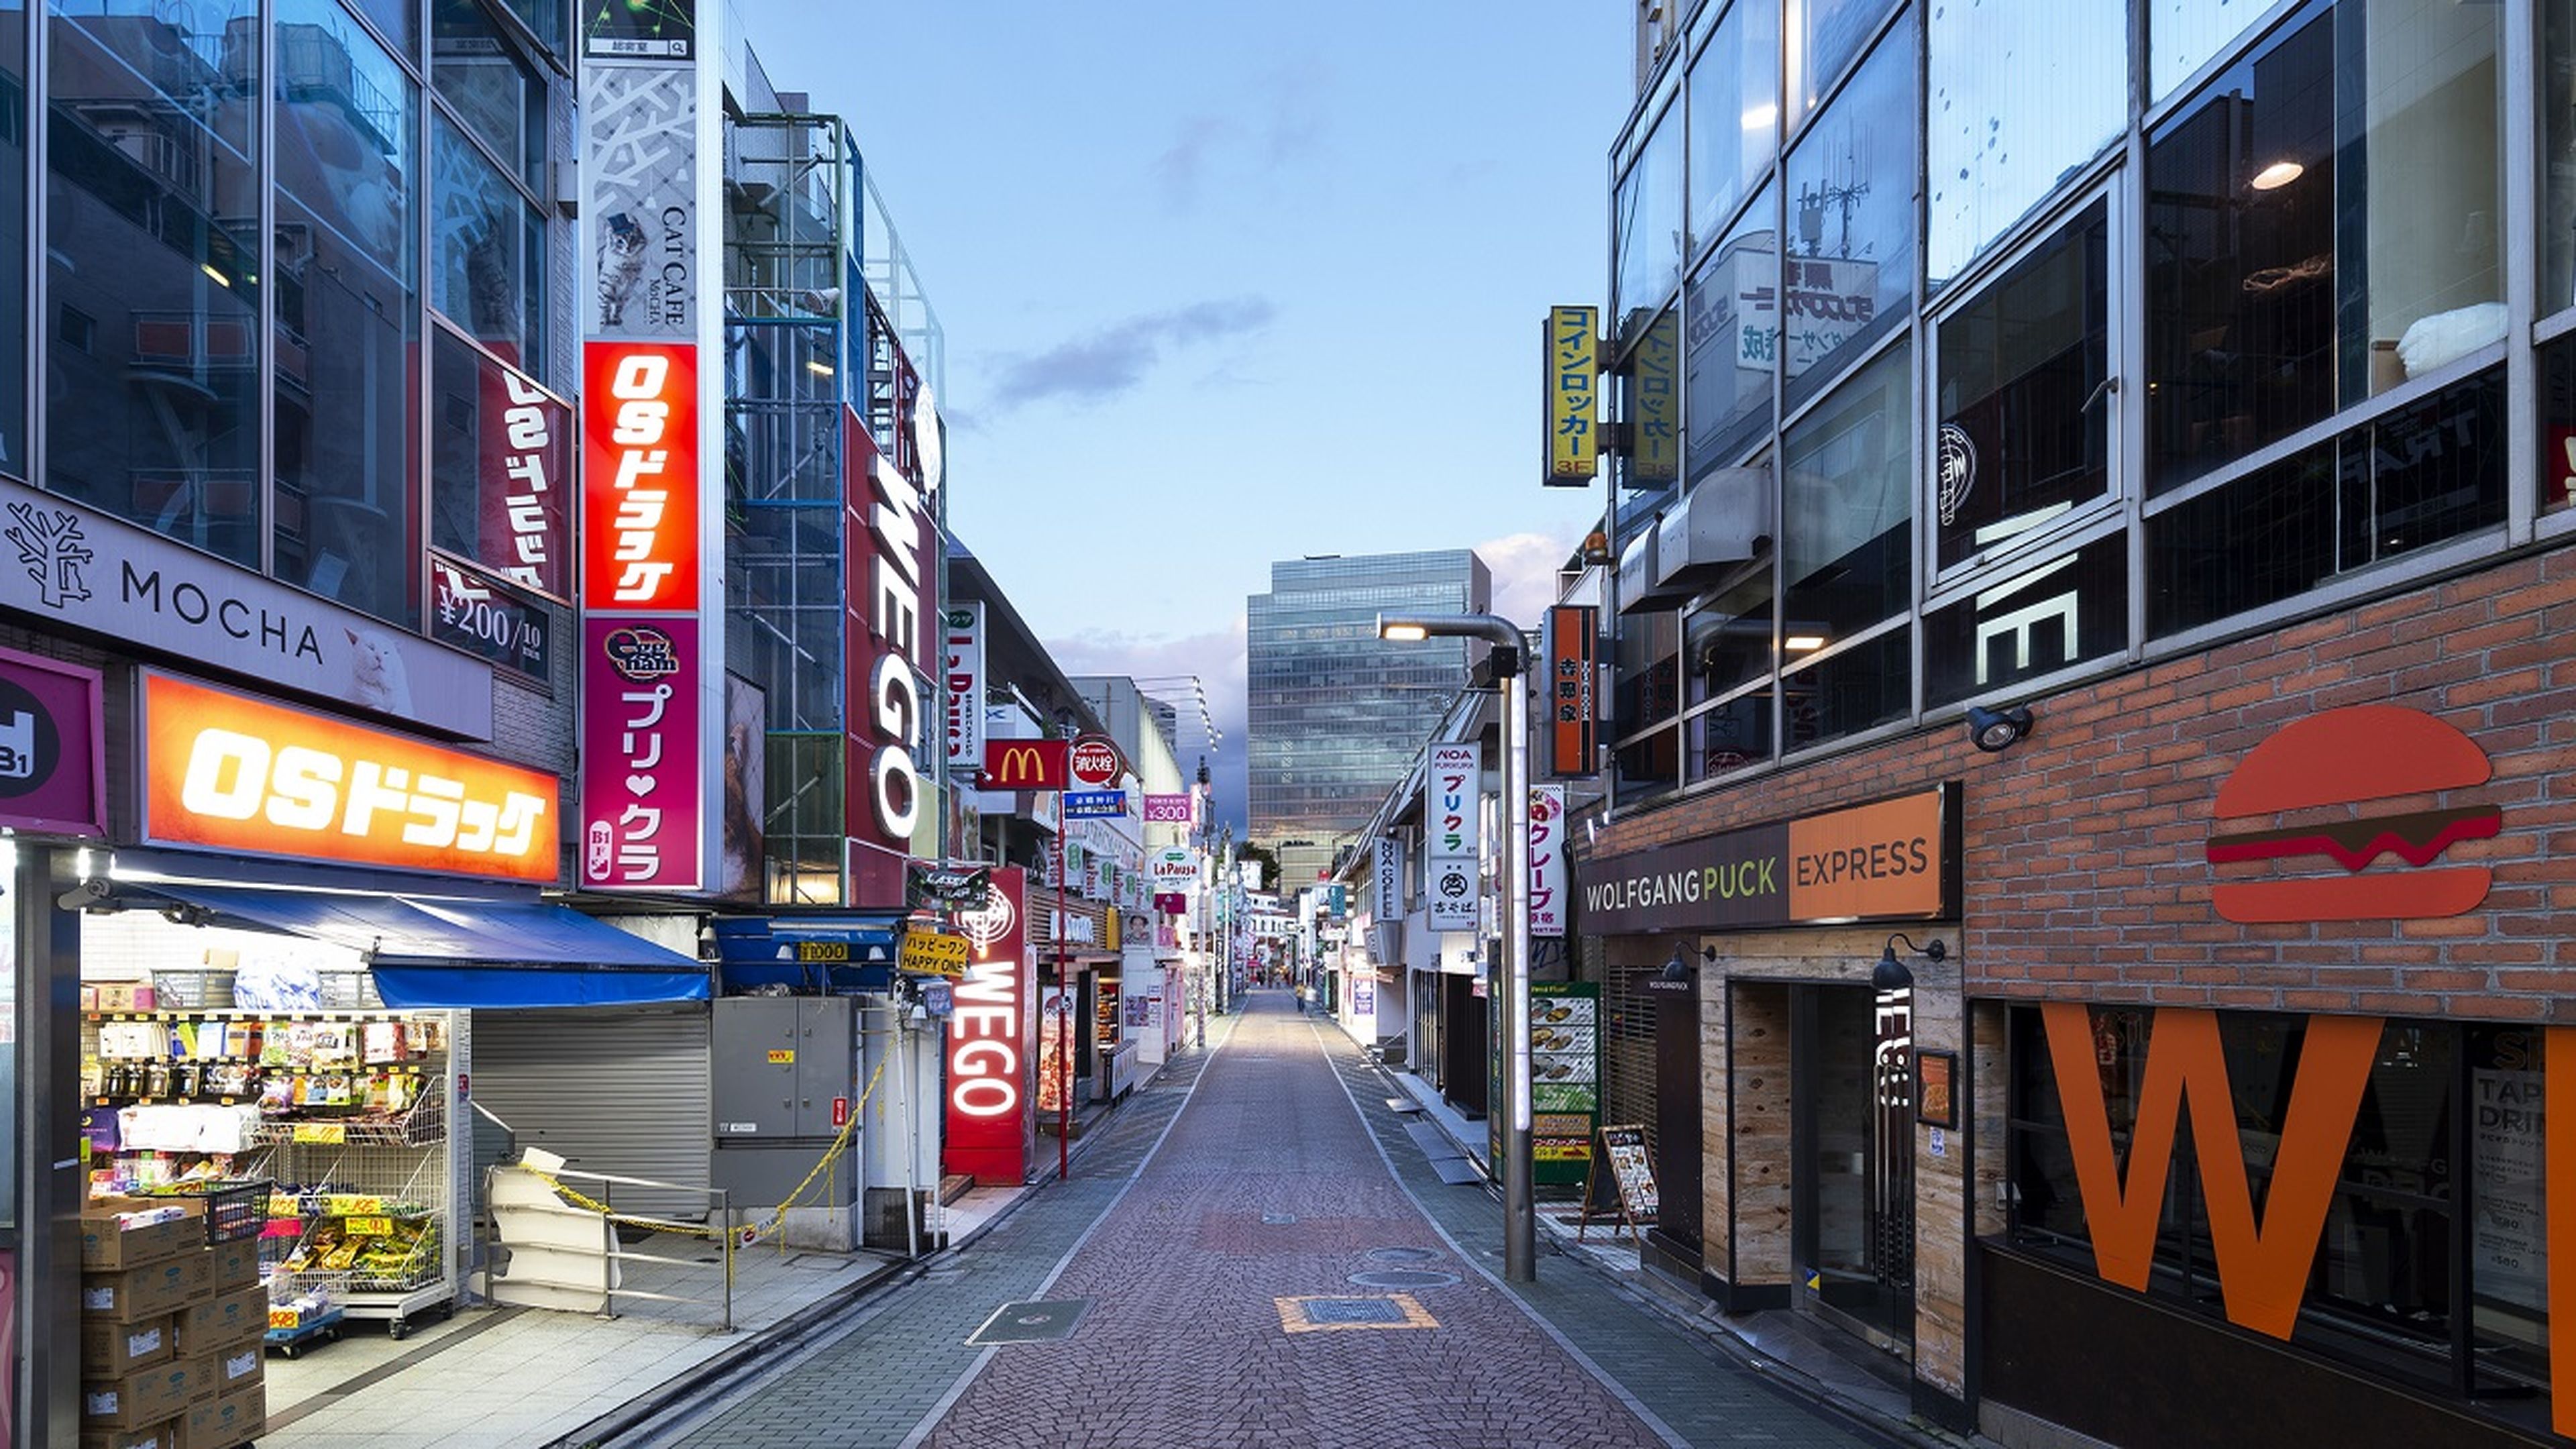 He viajado a Japón, y estas son las 5 cosas más locas del país